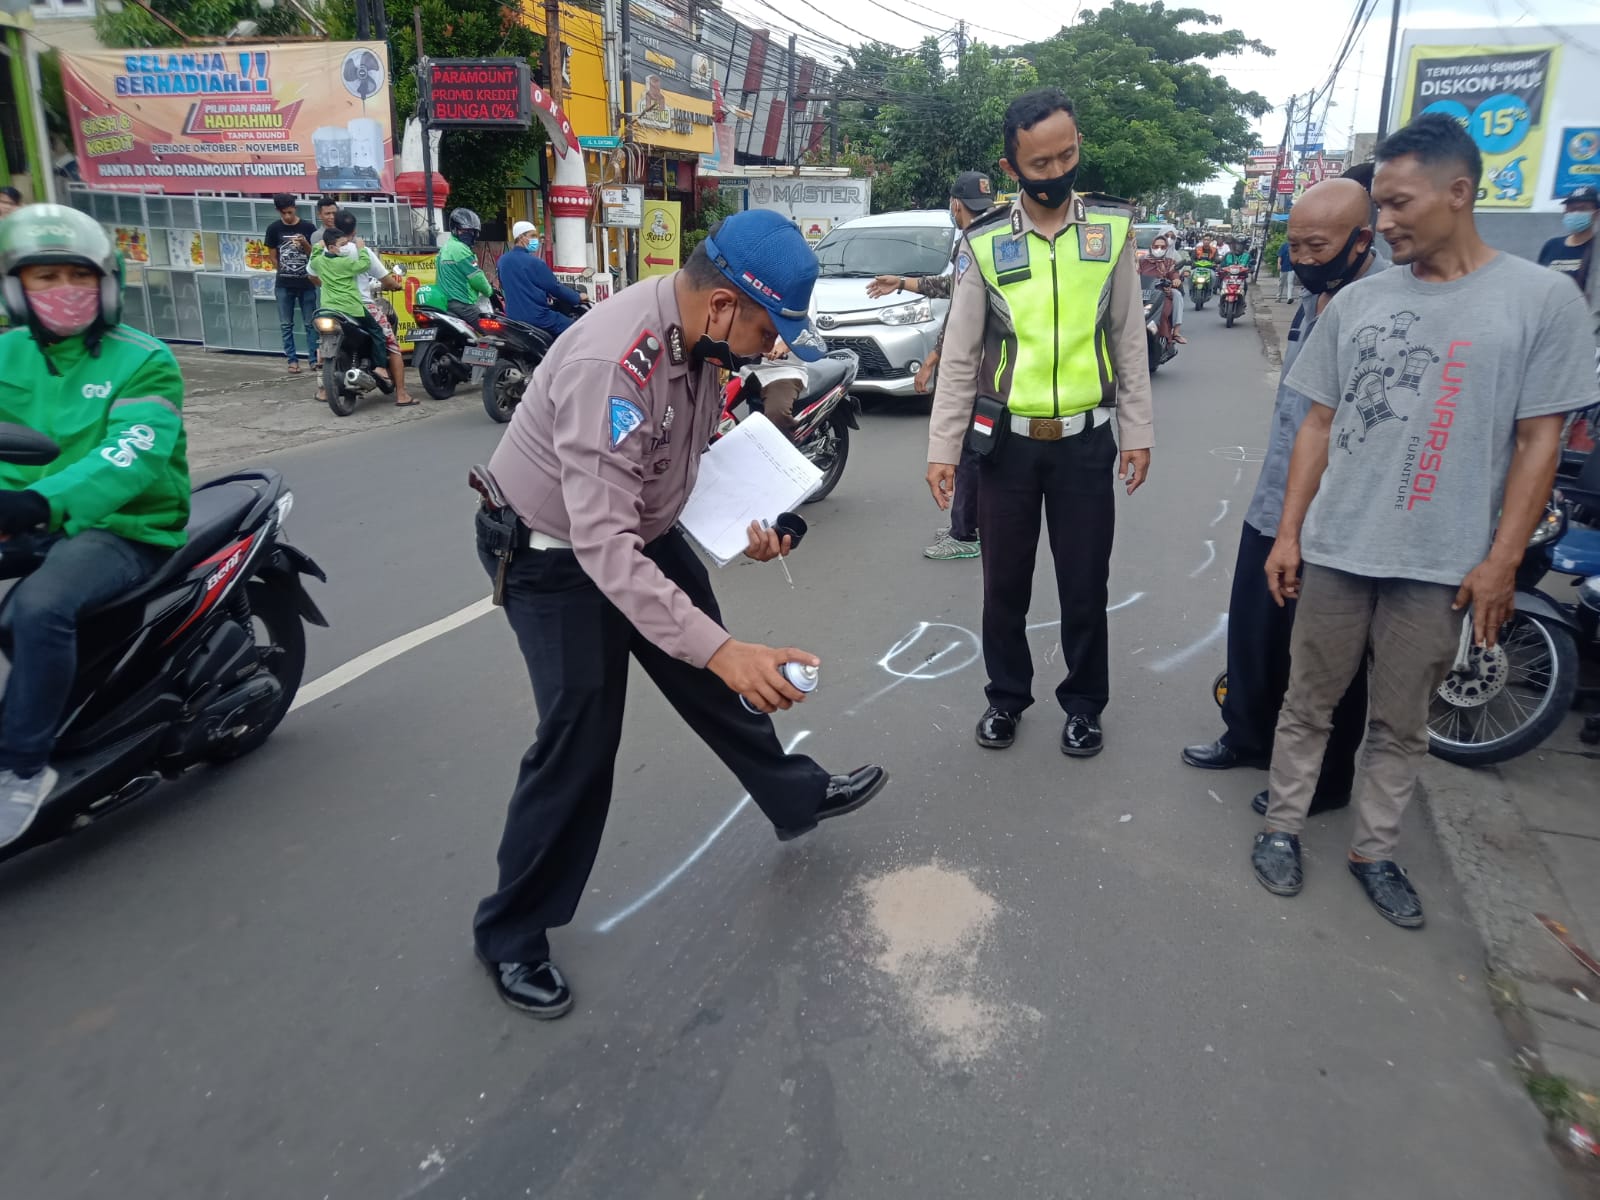 Insiden kecelakaan yang menyebabkan balita meninggal terjadi di Jalan Raya Raden Saleh, Kecamatan Karang Tengah, Kota Tangerang, Jumat 10 Desember 2021 sekitar pukul 11.00 WIB.